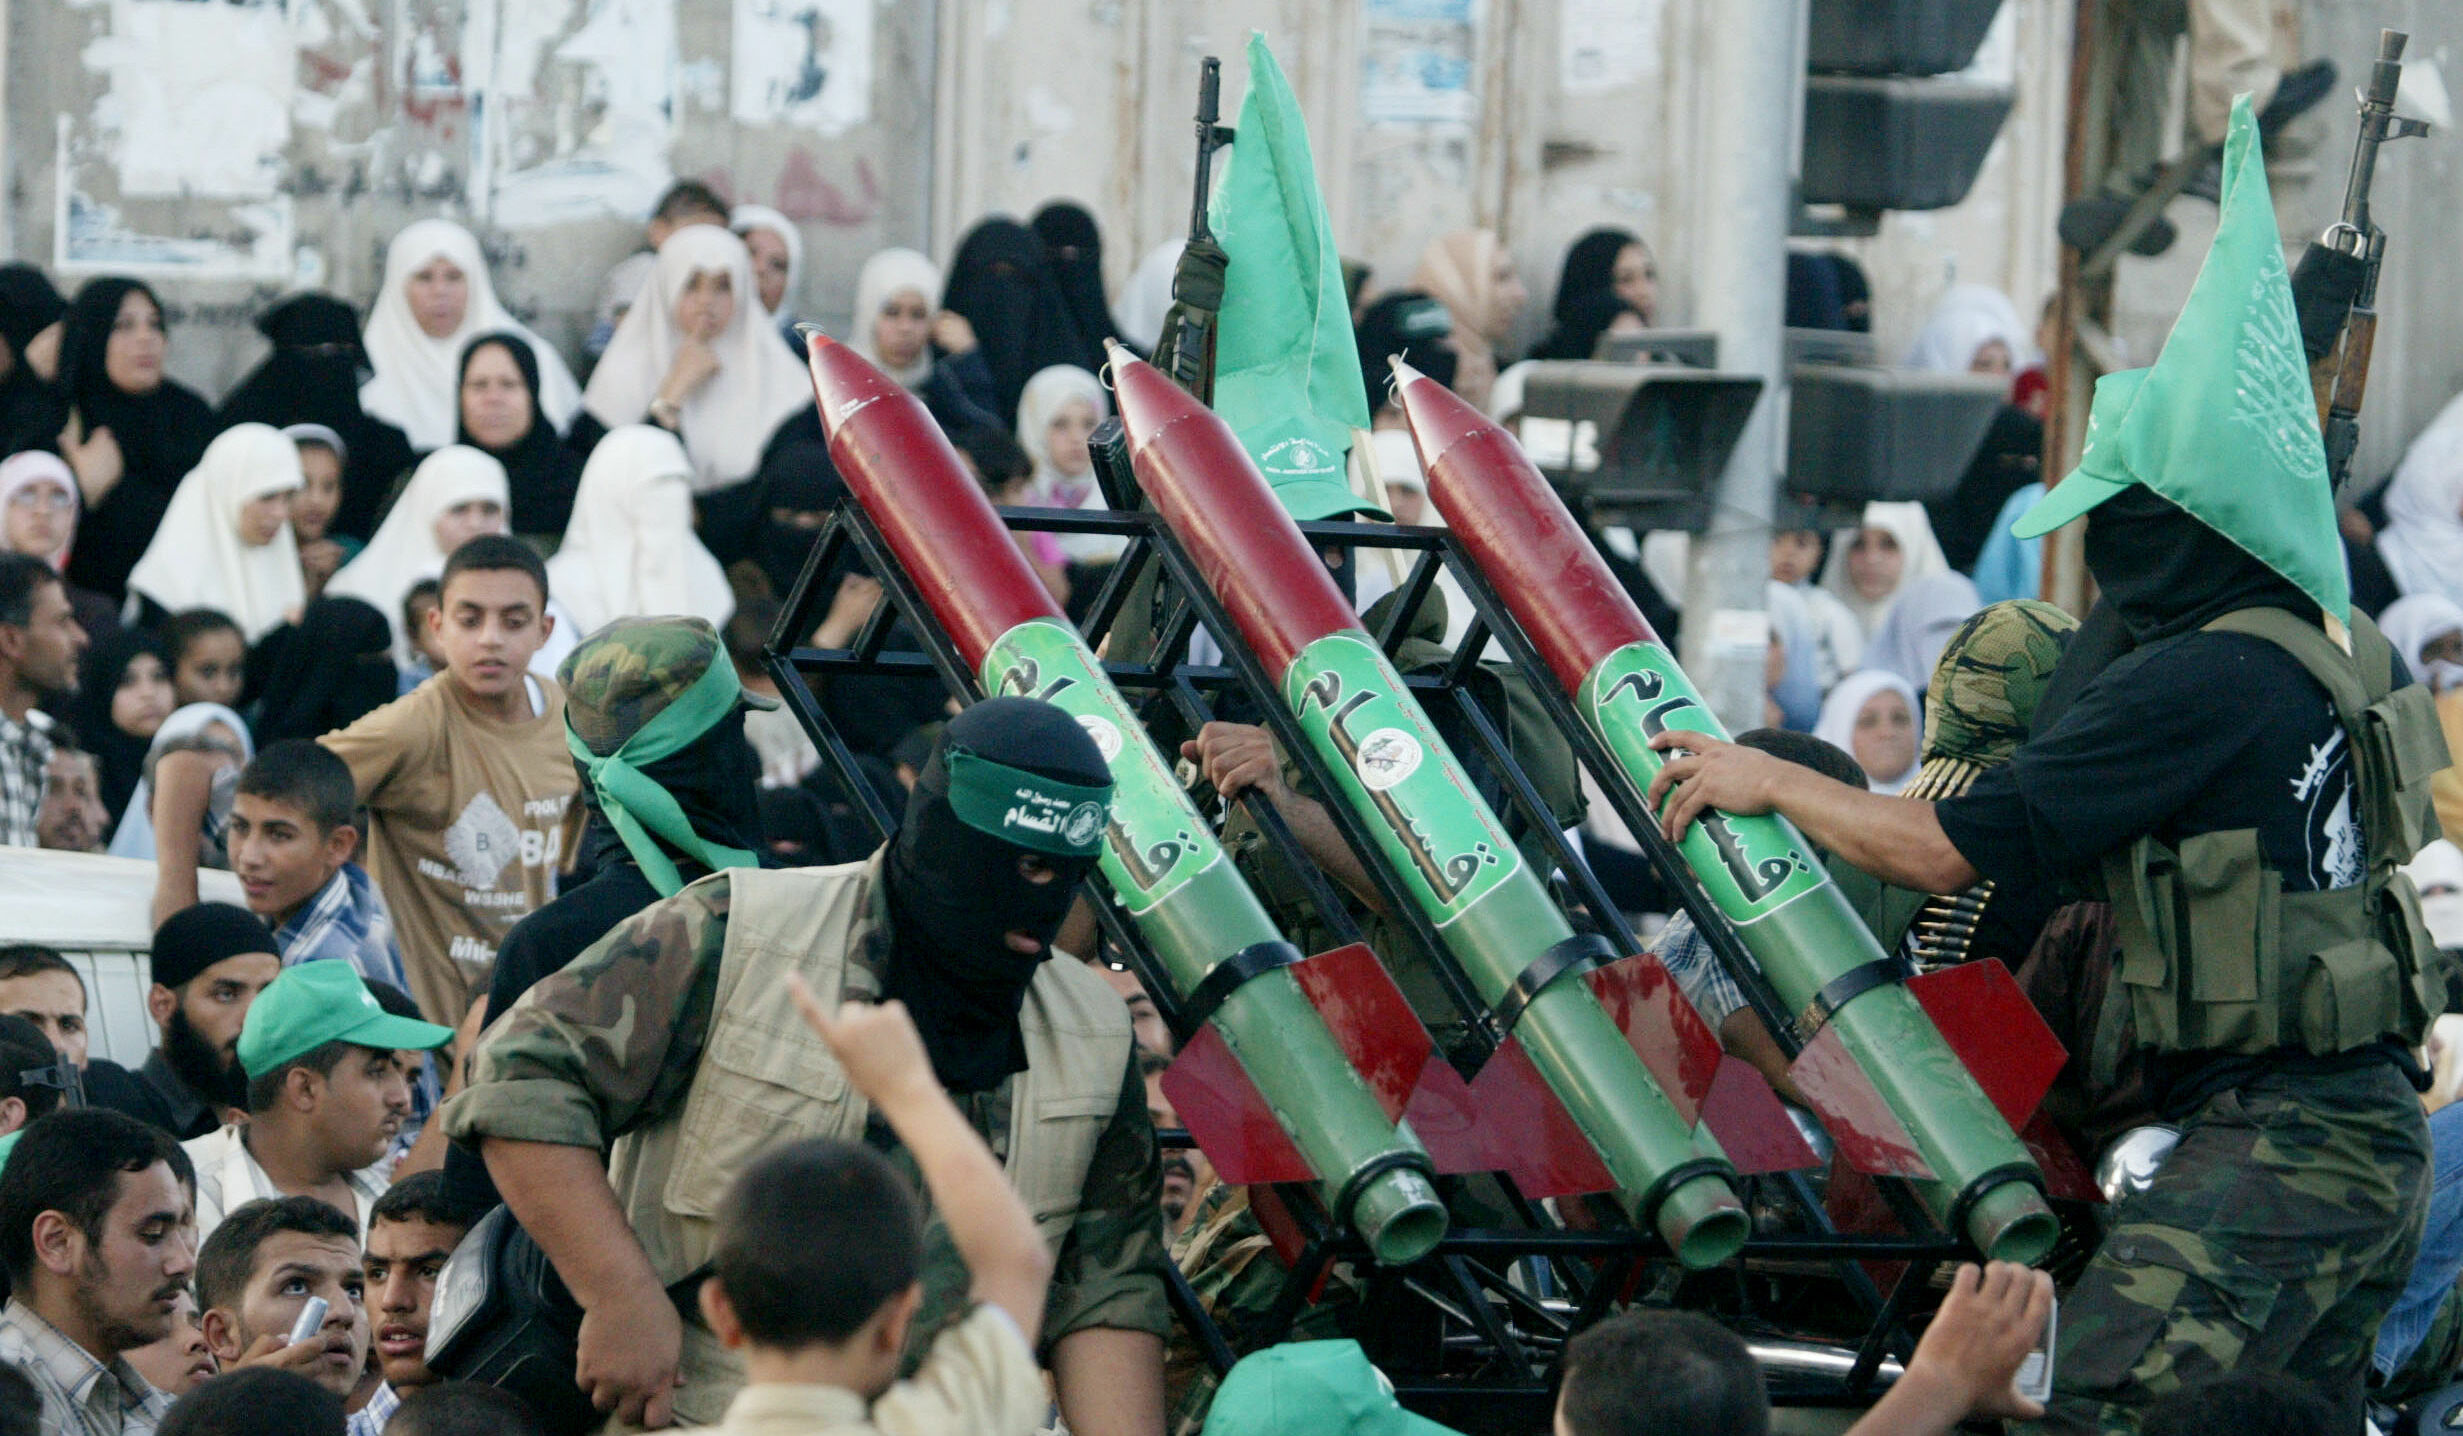 Các trợ lý cũ của ông Obama bị cáo buộc liên kết với Hamas giữa lúc xung đột Gaza căng thẳng - Ảnh 3.